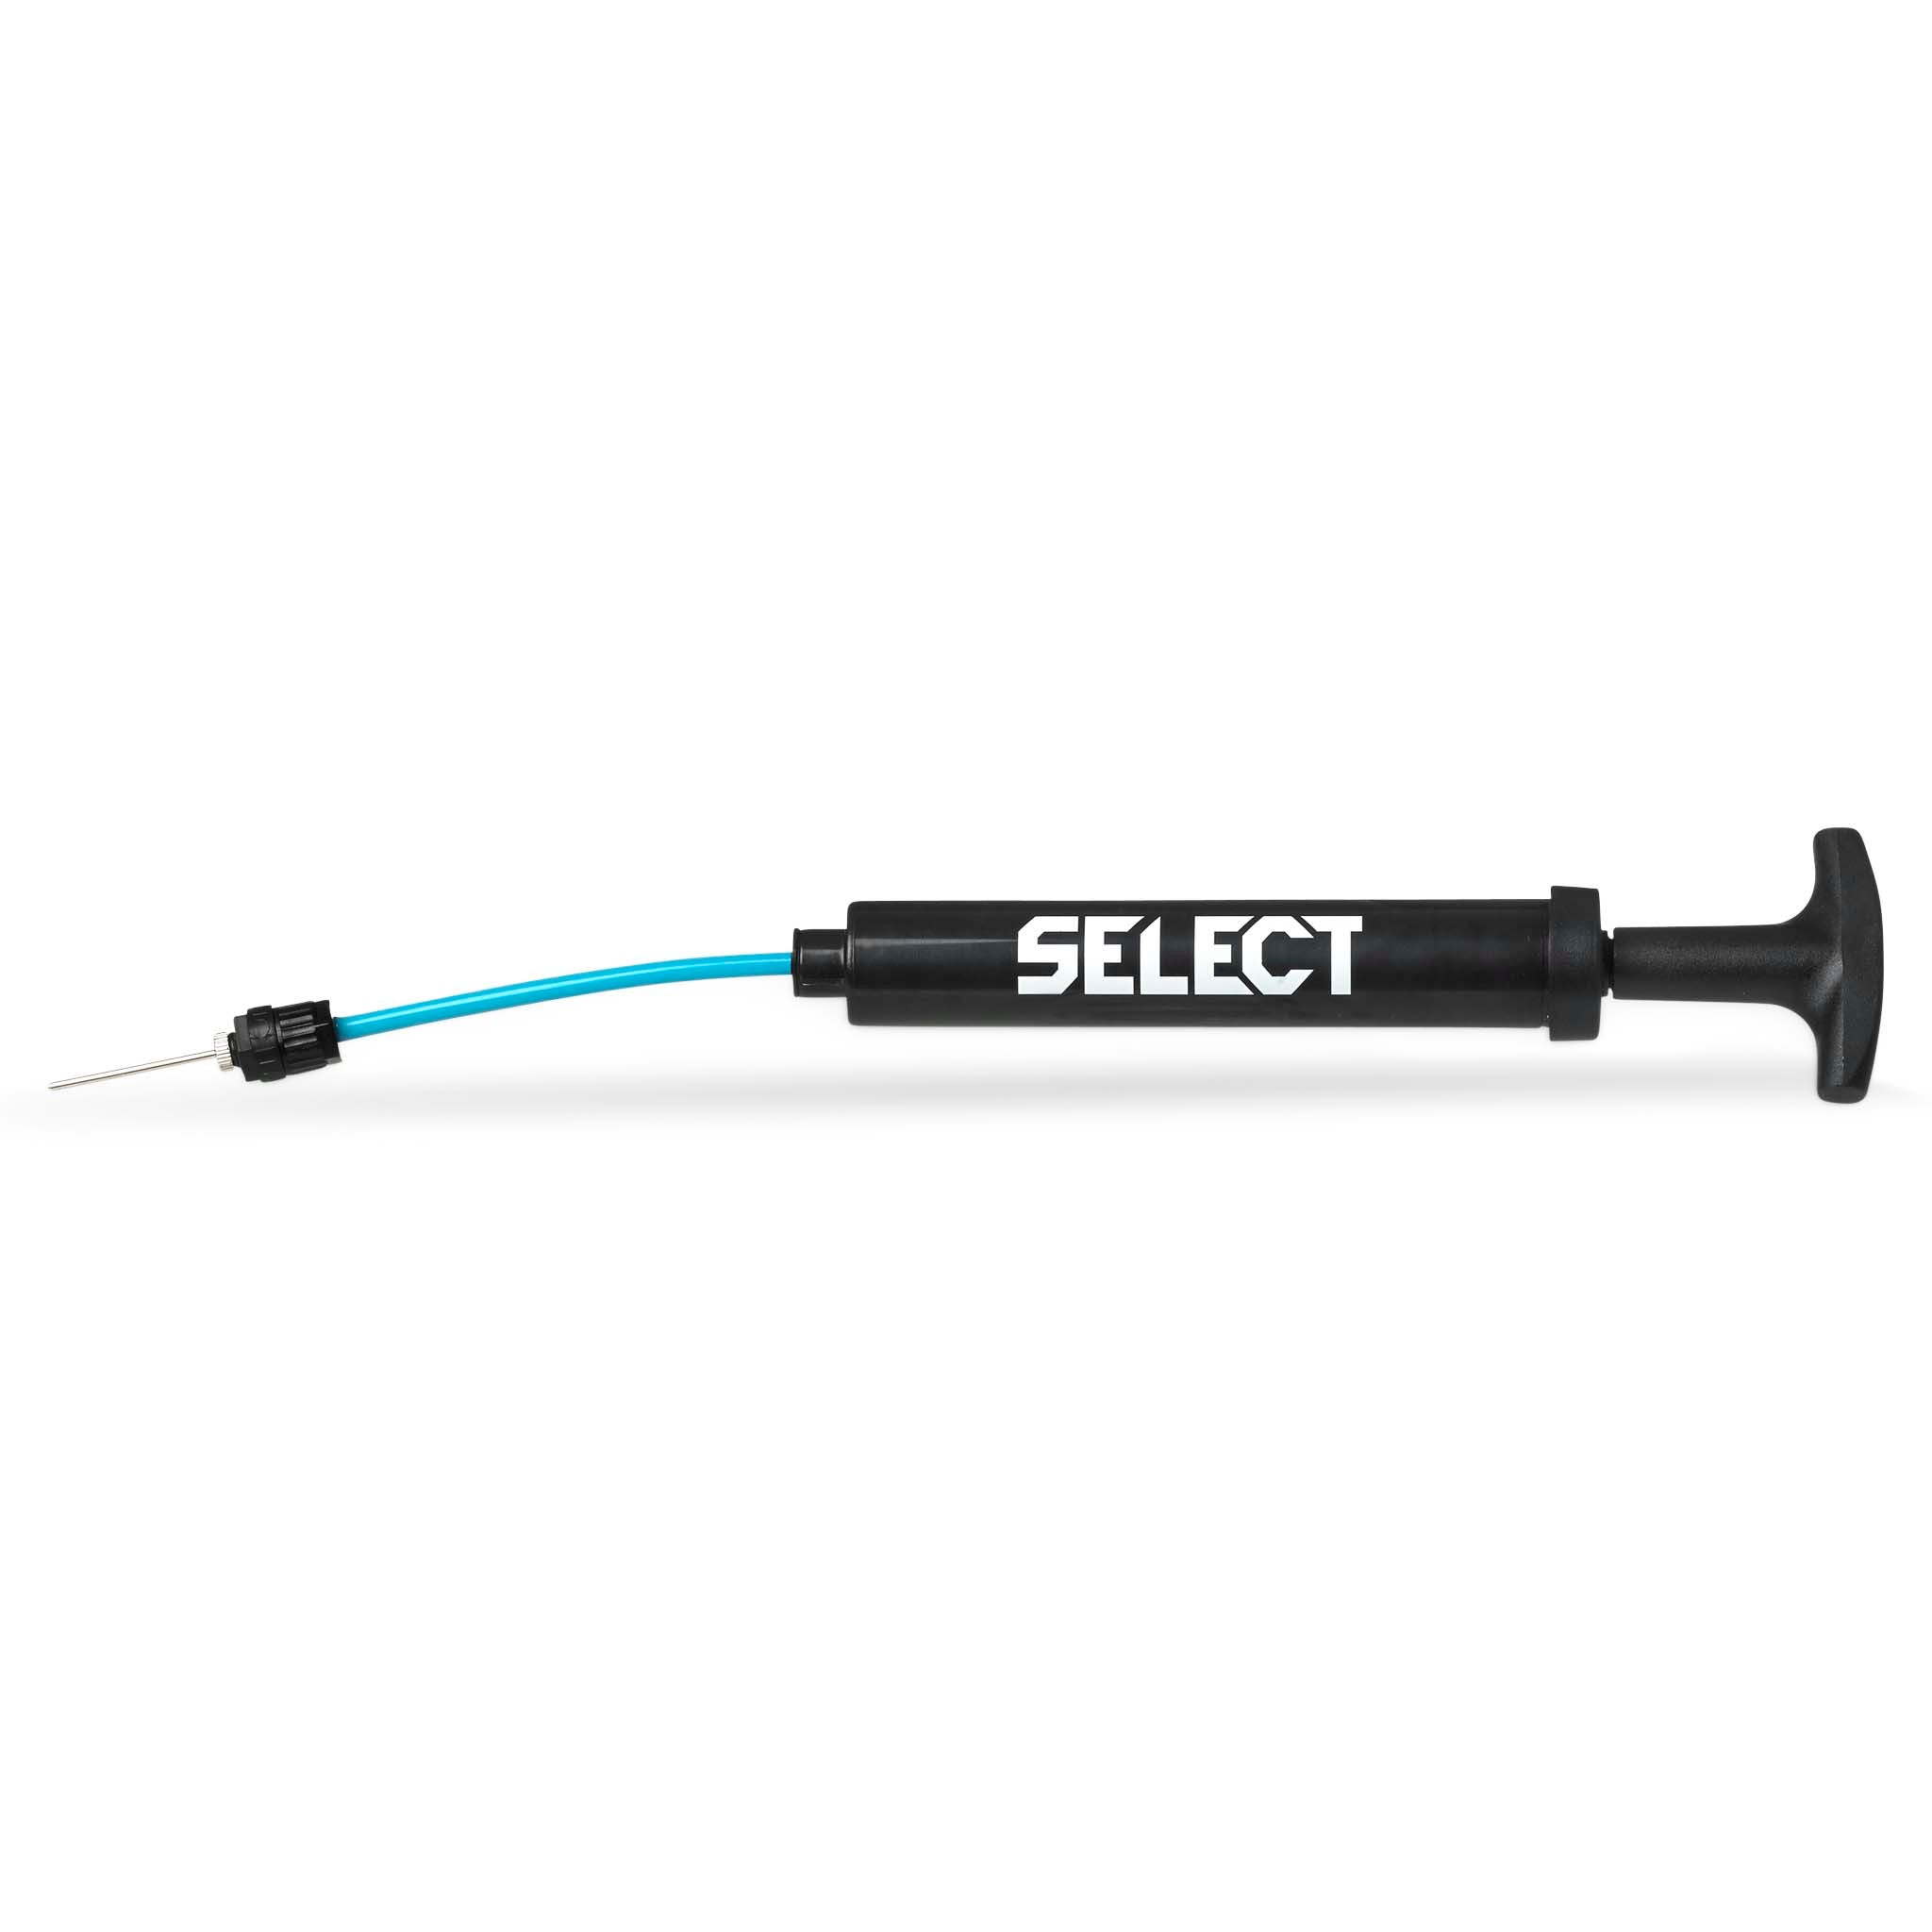 Ball pump 15 cm with inbuilt hose #colour_black